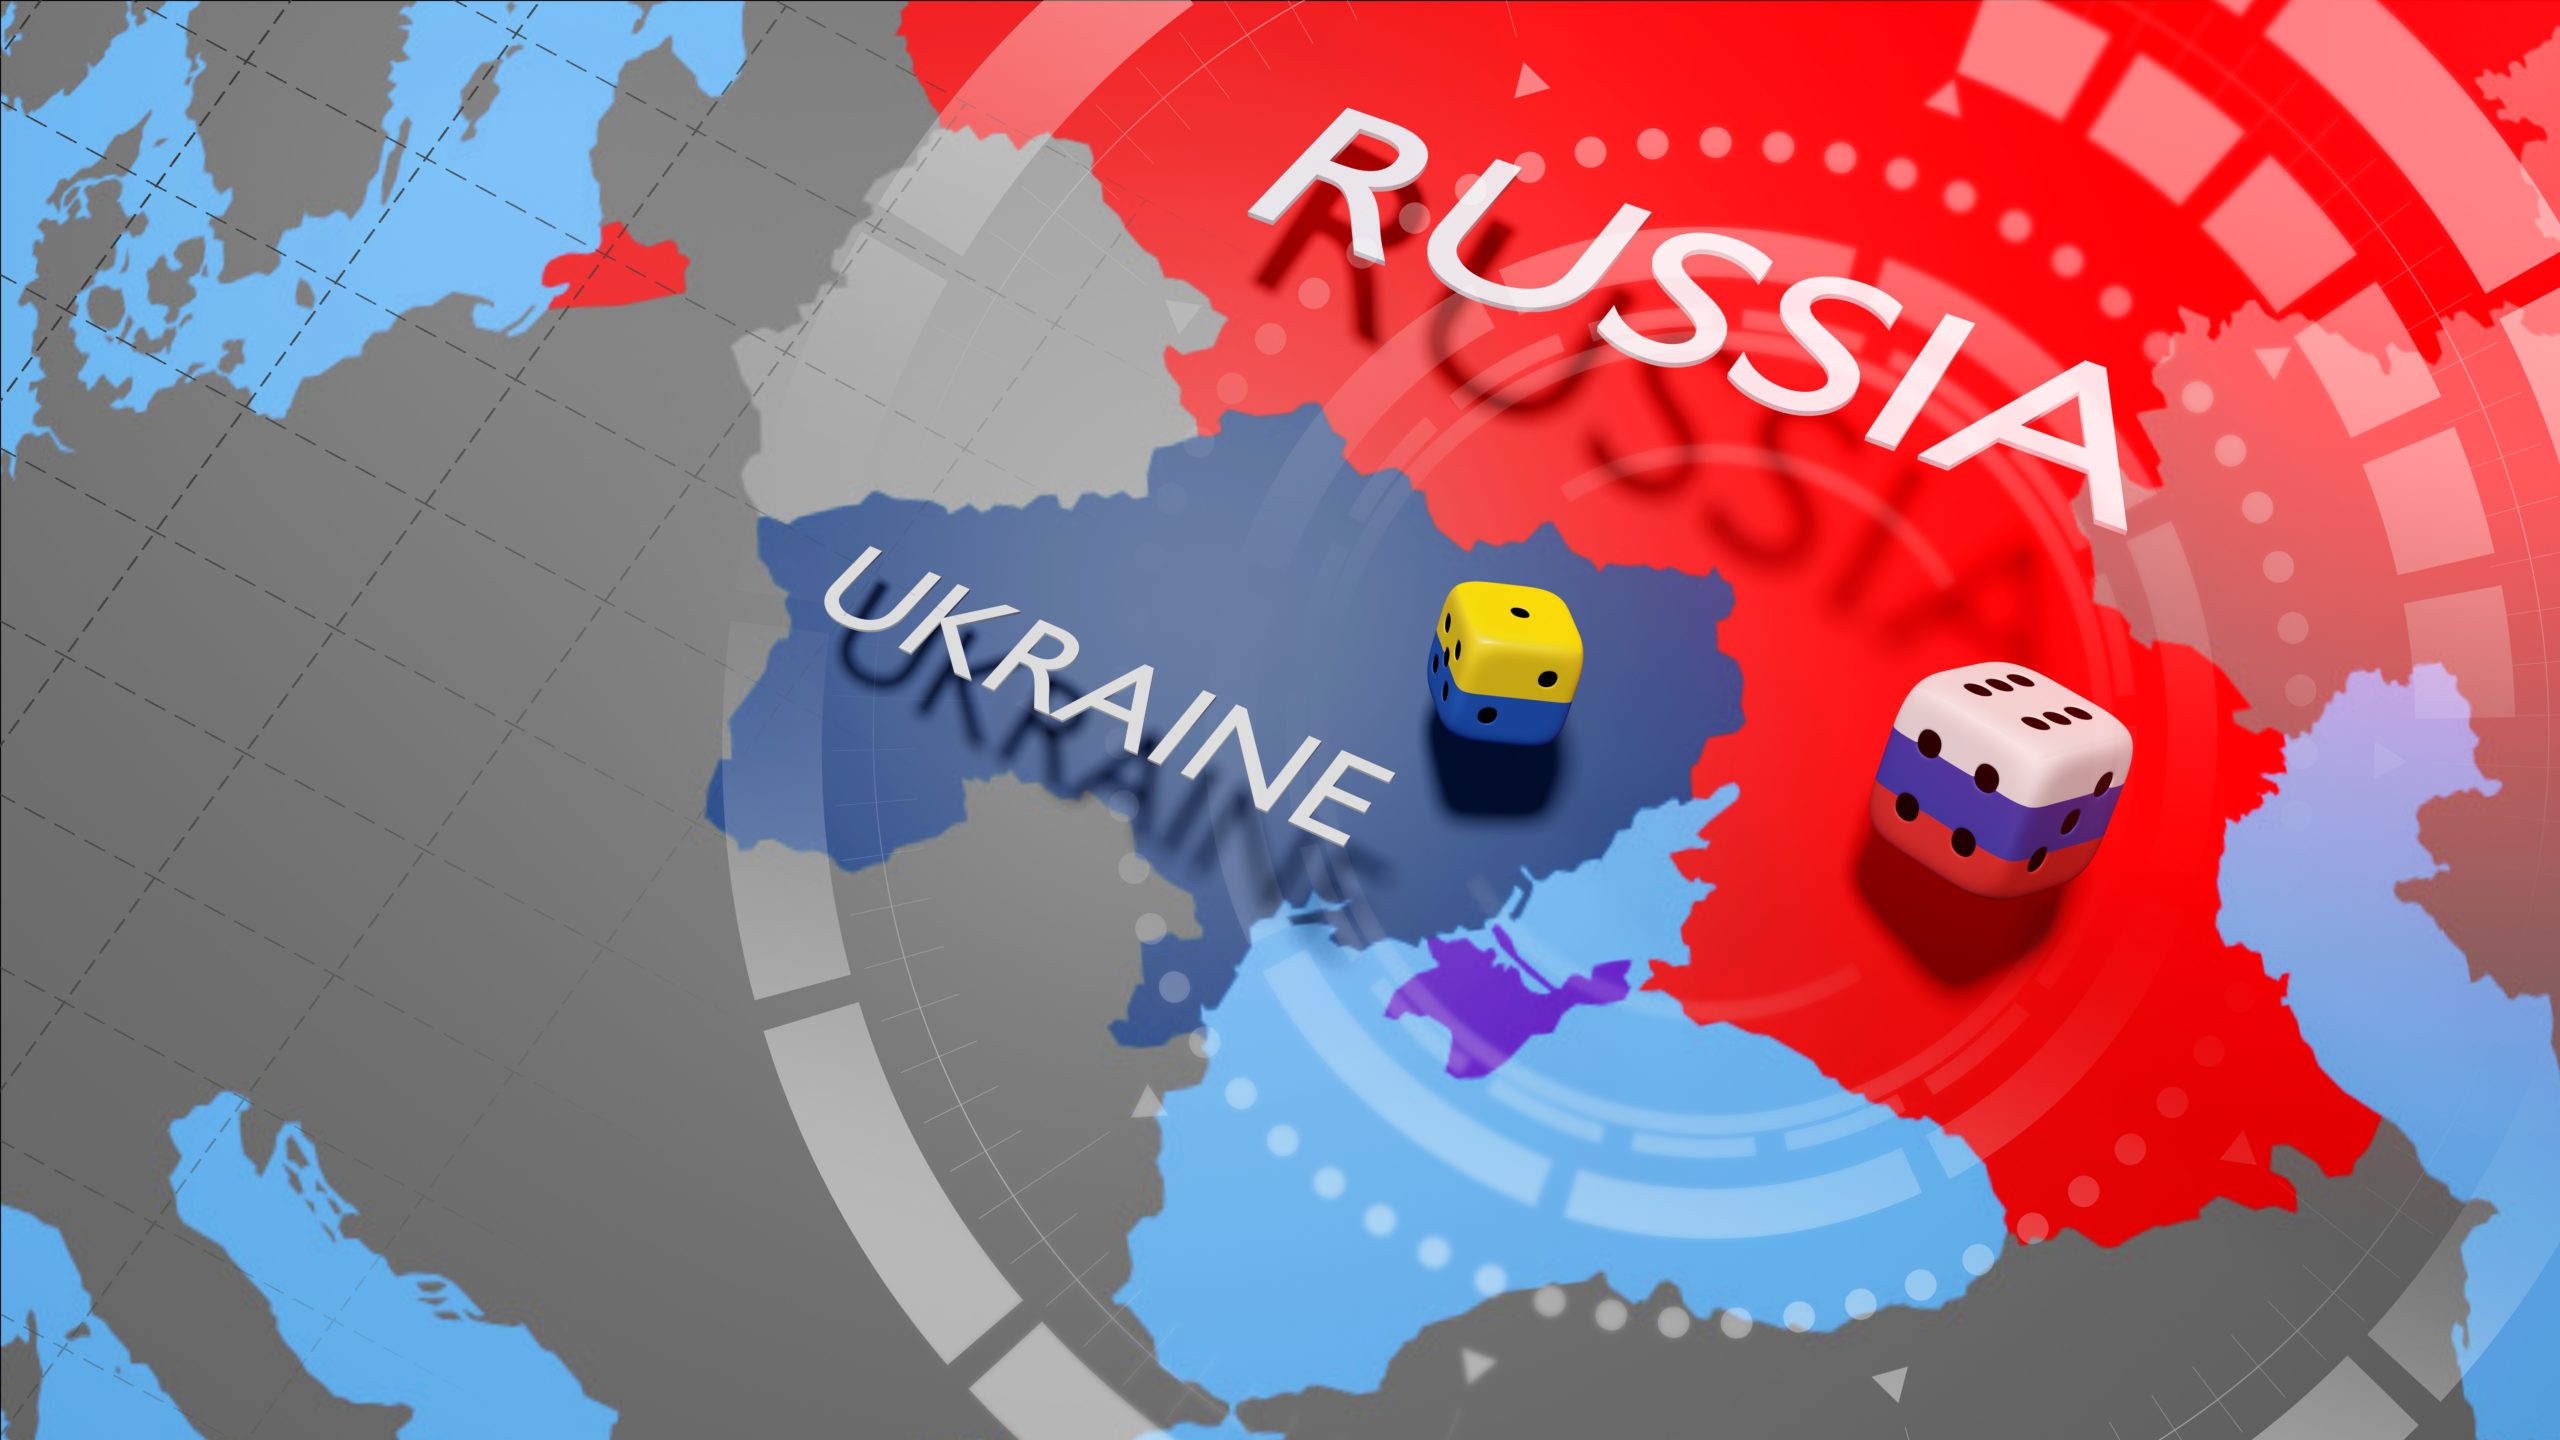 Mosca: “Un caccia ucraino ha colpito un villaggio russo”